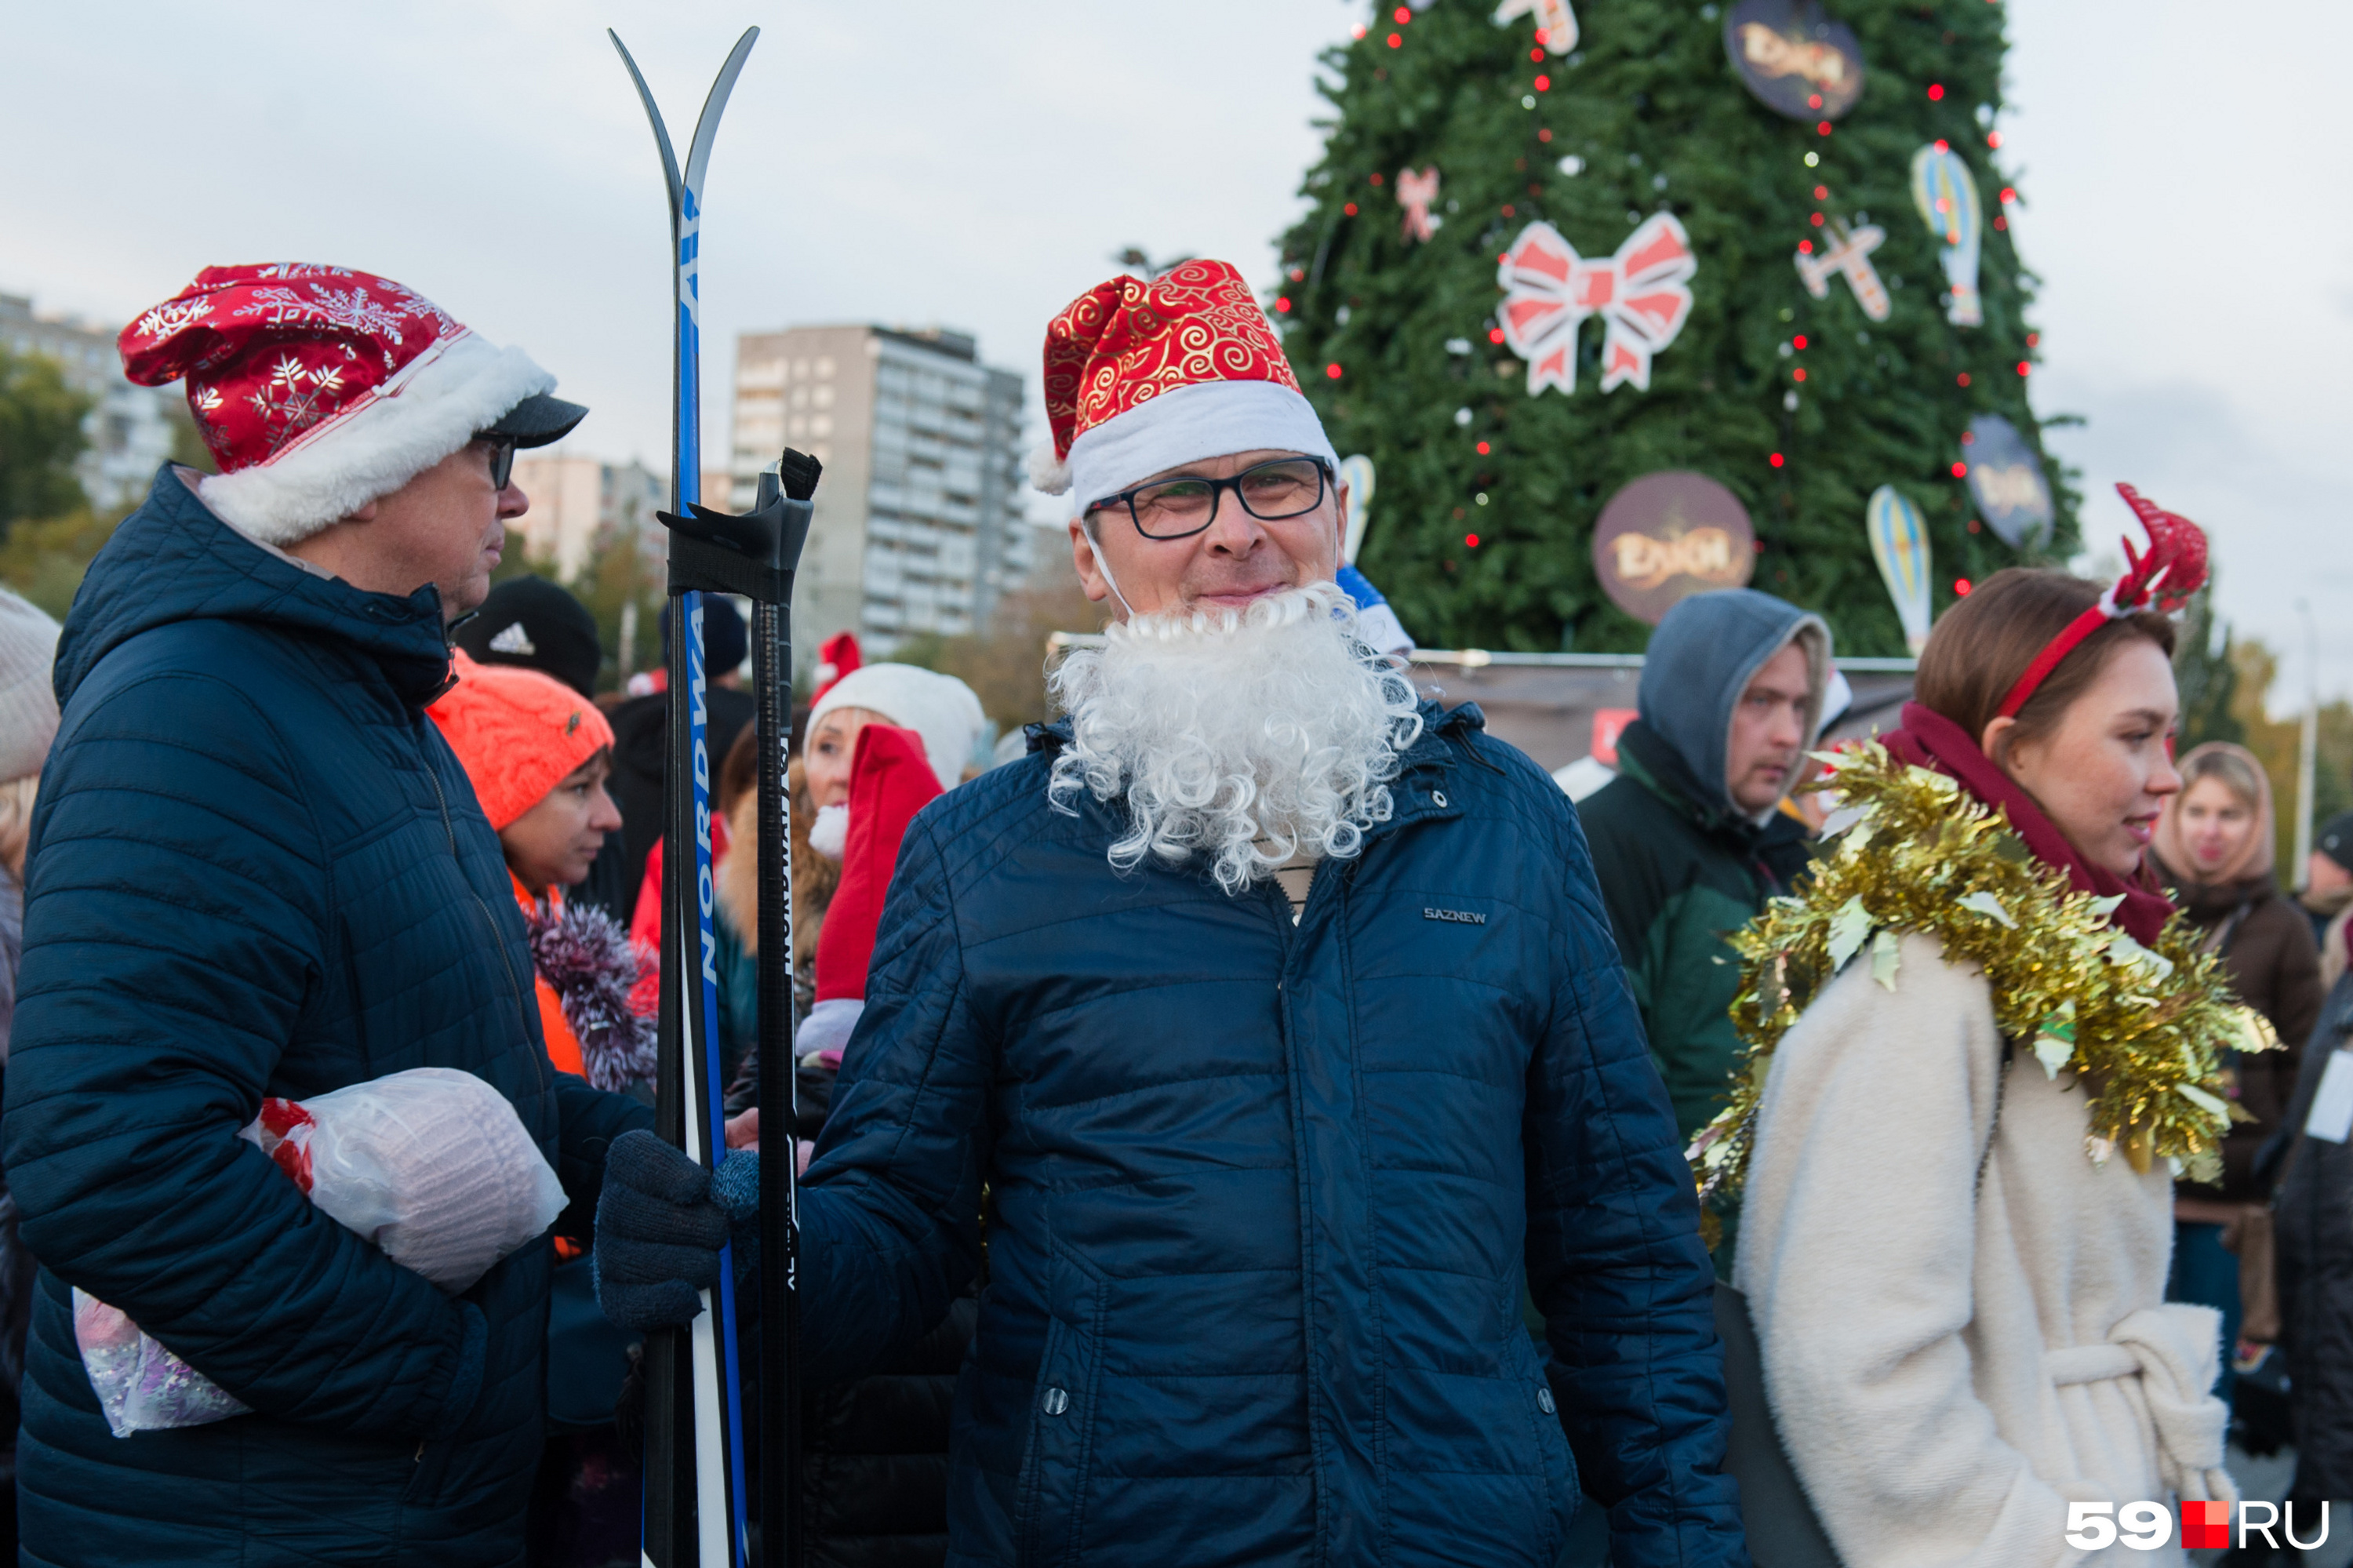 А вот и Дедушка Мороз с бородой и даже лыжами